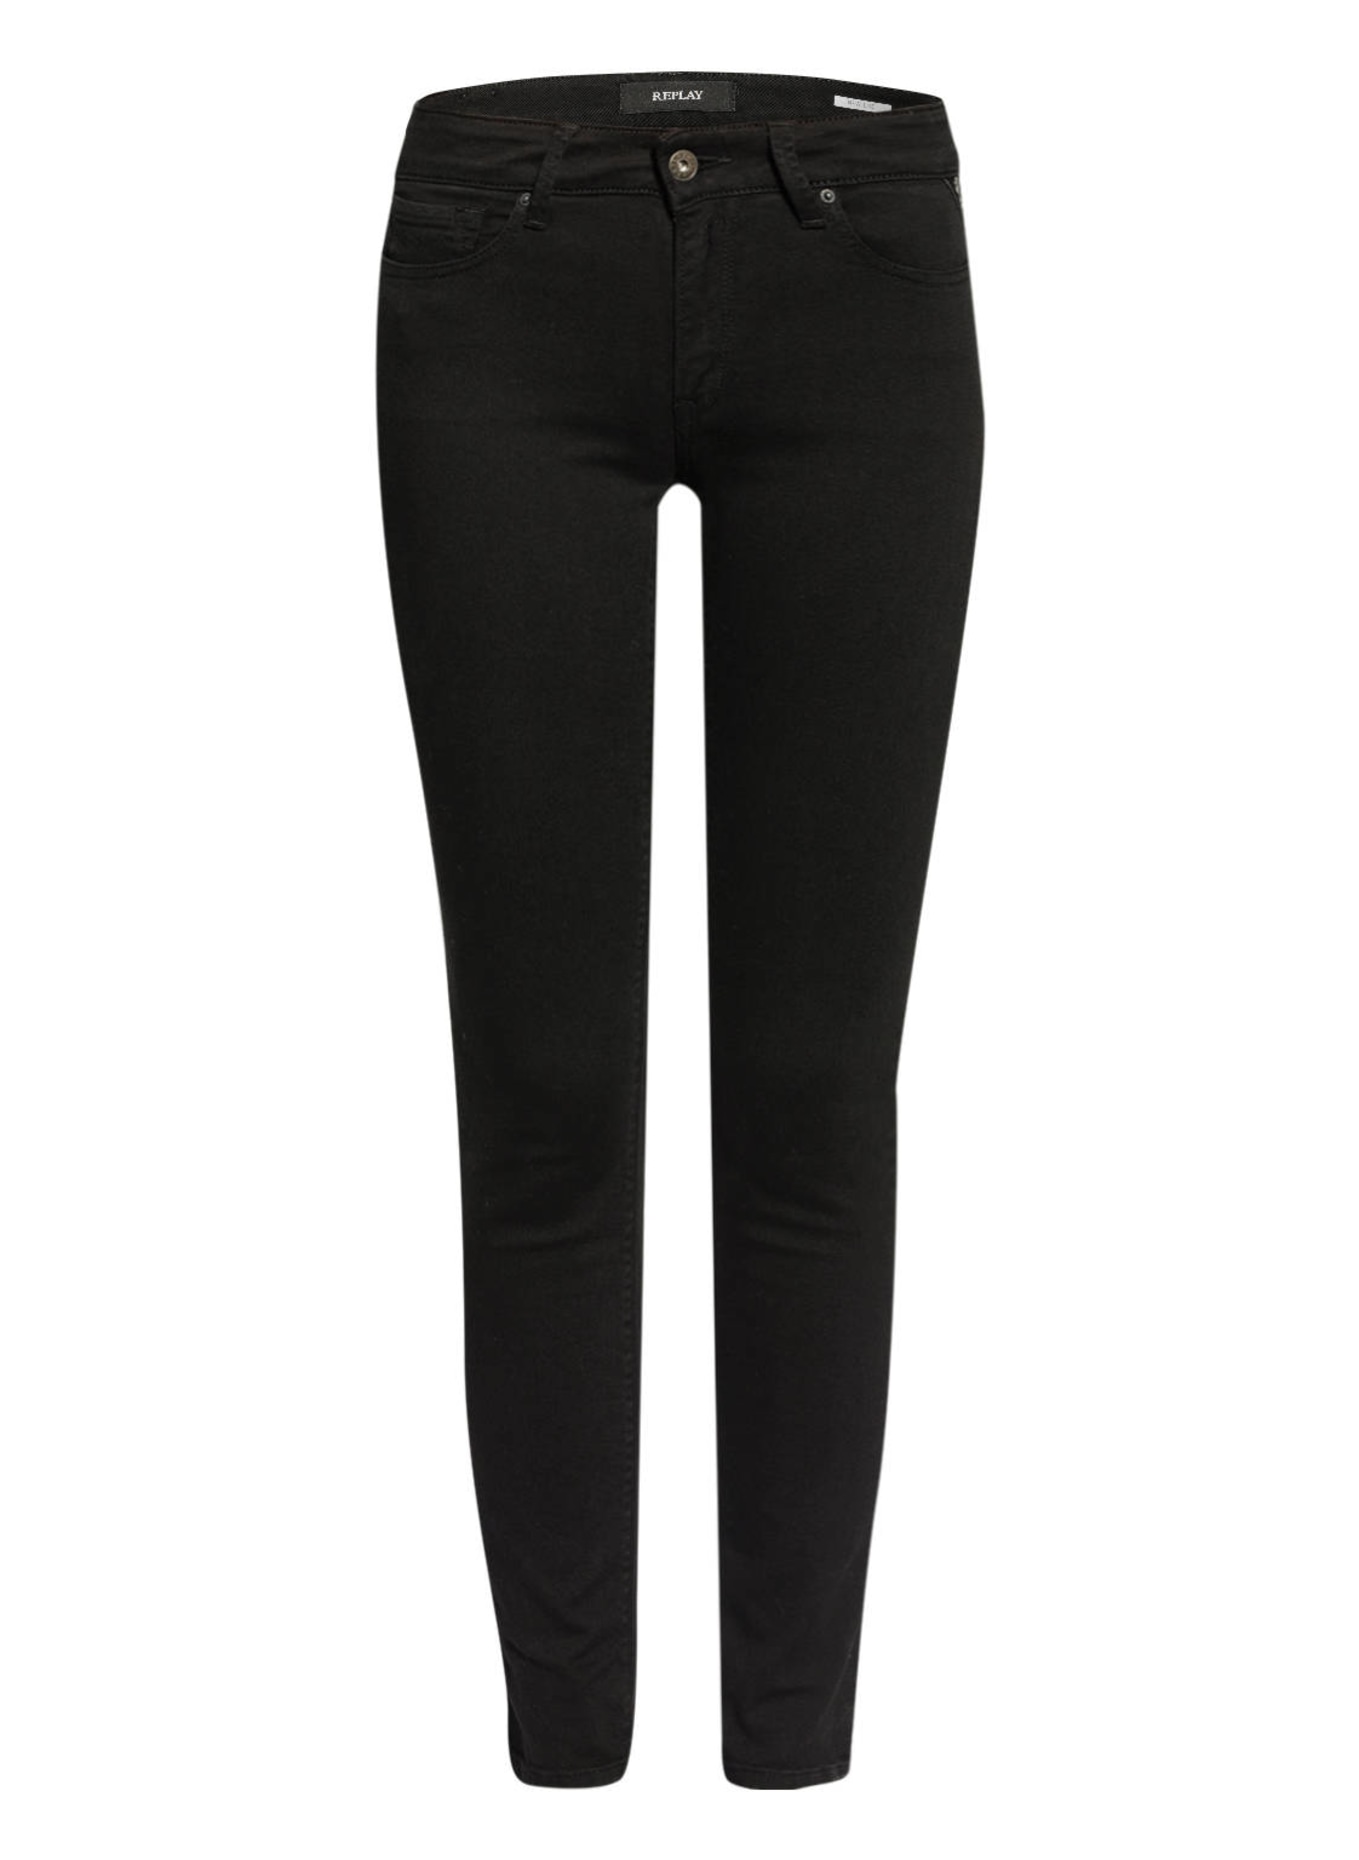 REPLAY Skinny Jeans NEW LUZ, Farbe: 098 BLACK (Bild 1)